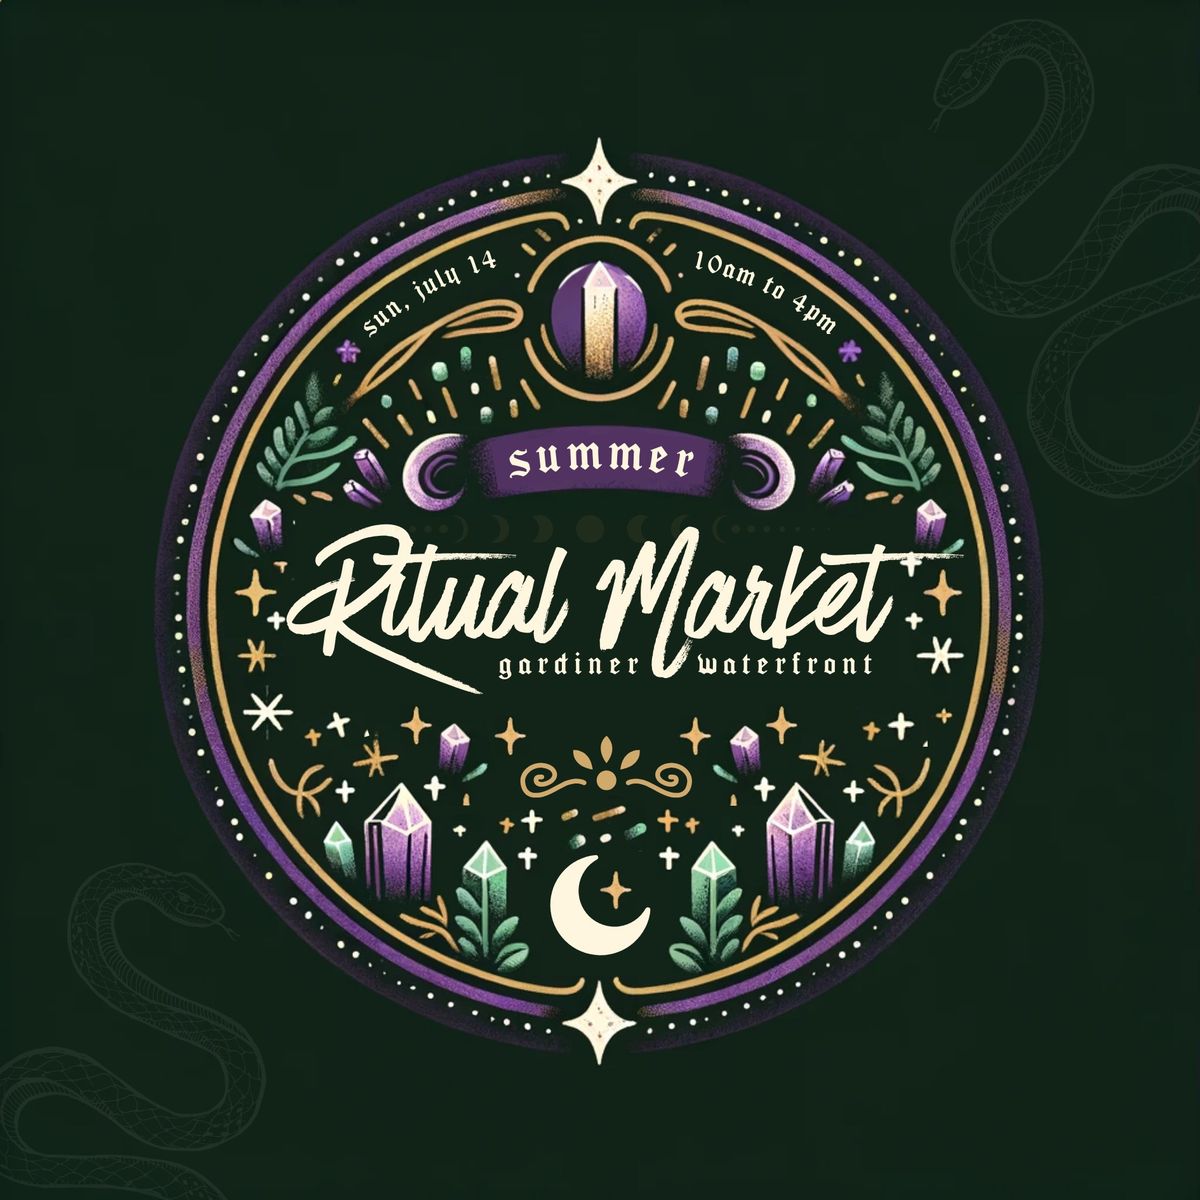 Summer Ritual Market